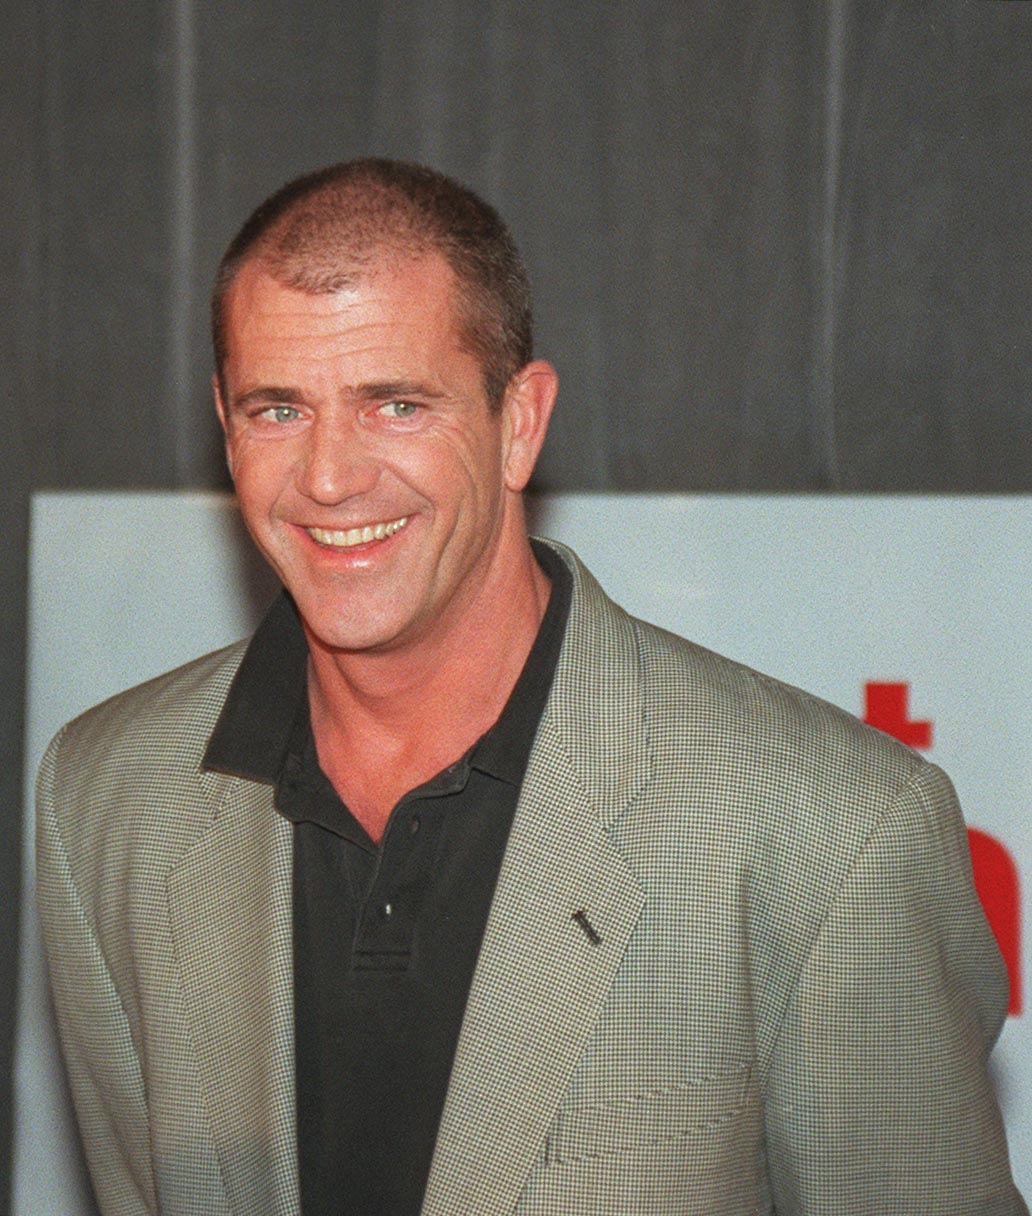 Mel Gibson lors d'une conférence de presse pour "Ce que veulent les femmes" le 17 octobre 2000 à Sydney, en Australie. | Source : Getty Images